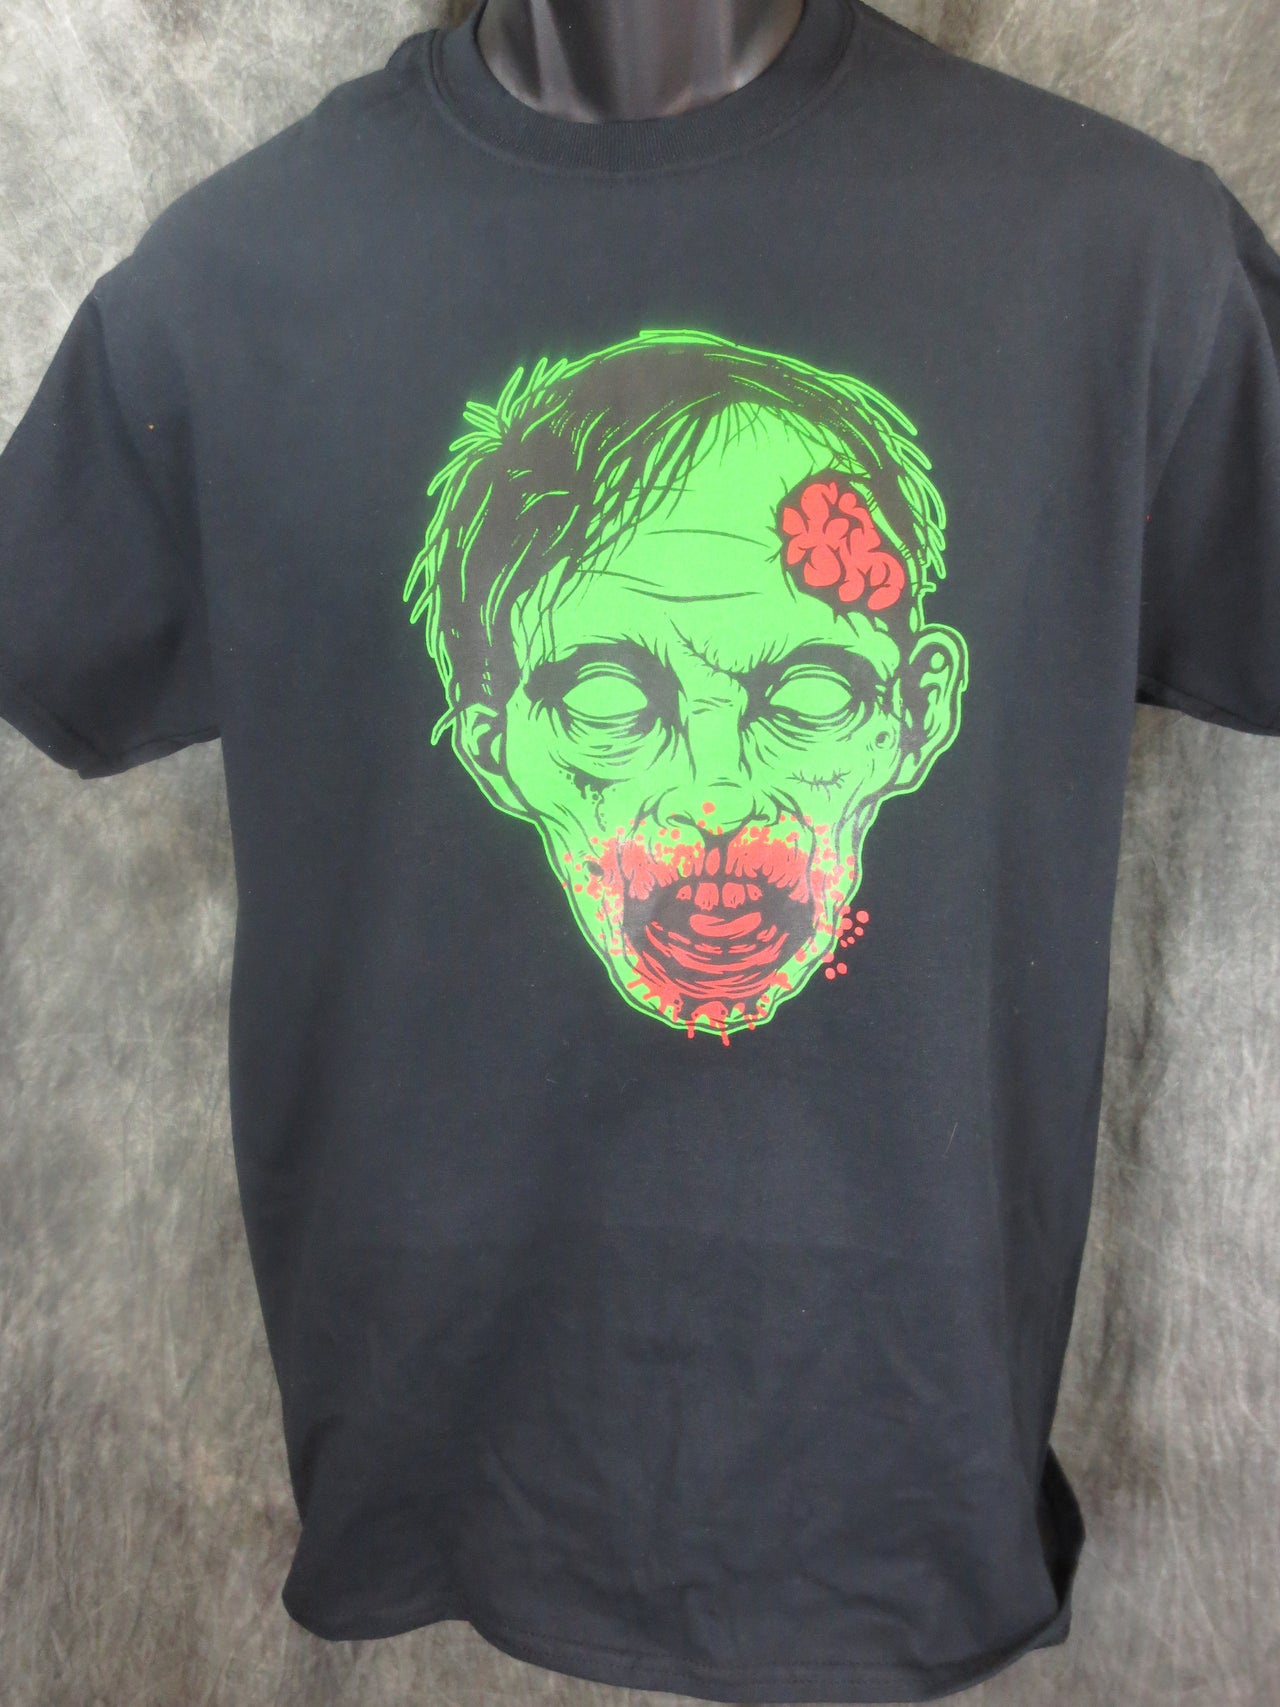 Zombie Face tshirt black tshirt - TshirtNow.net - 1